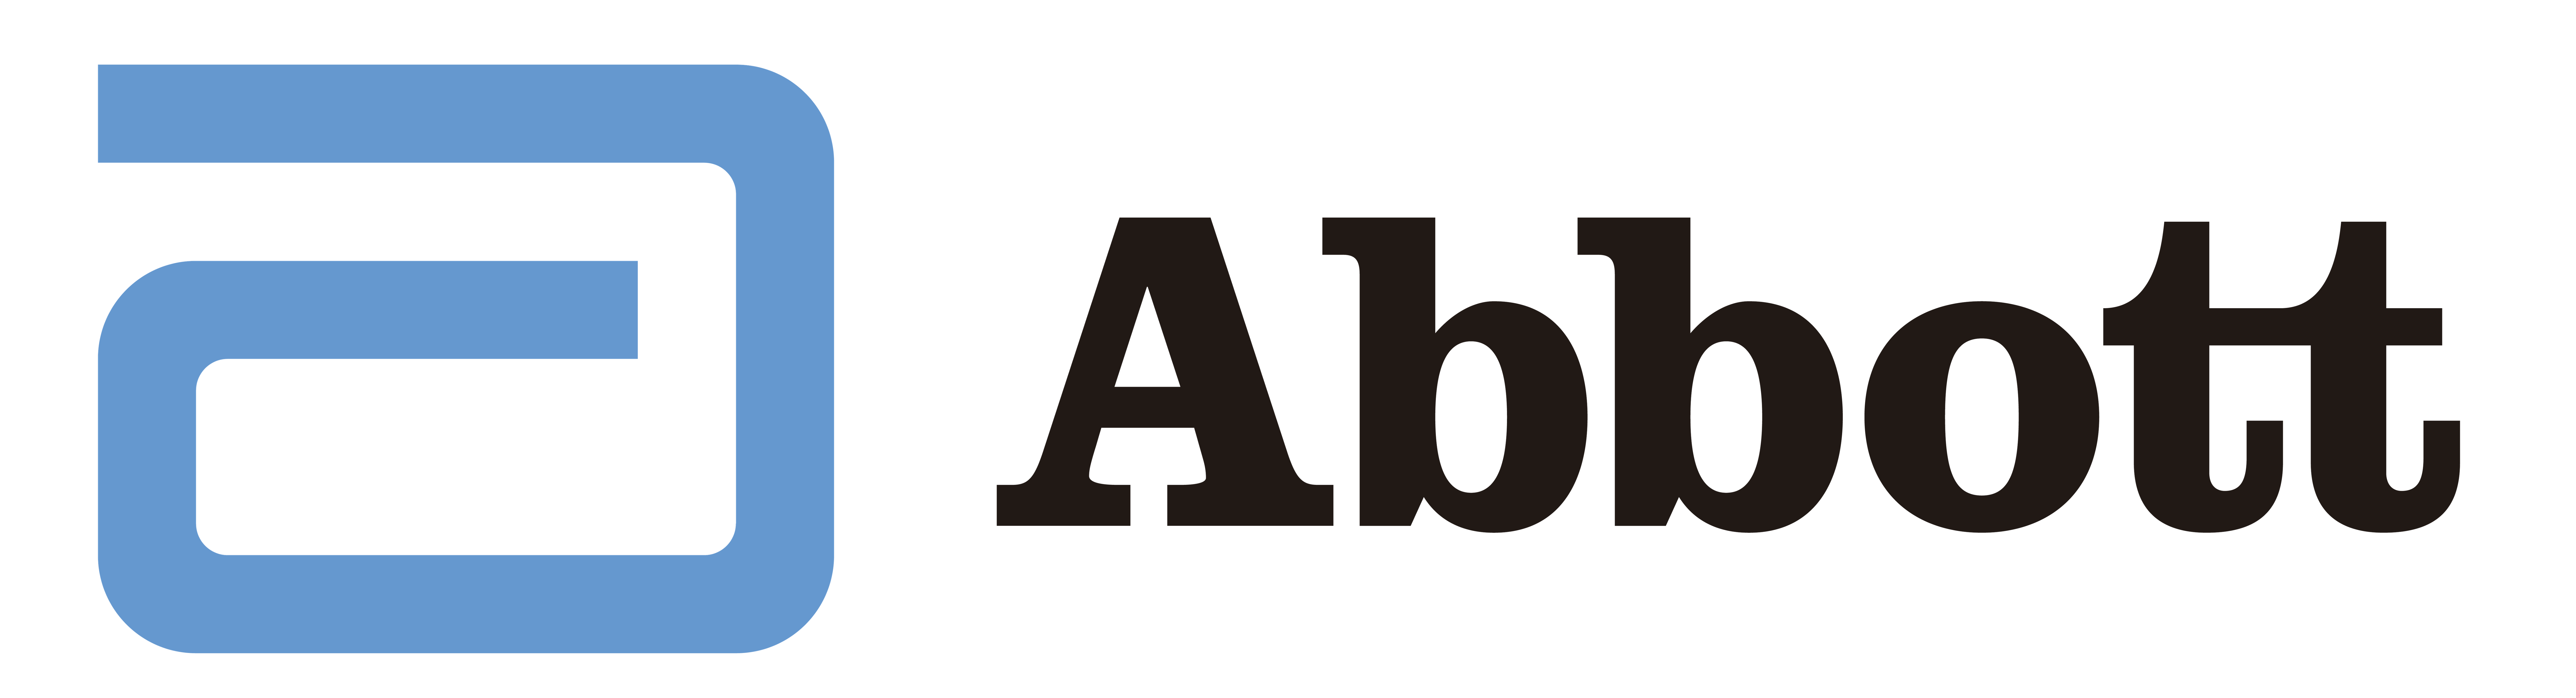 descrição da imagem: logotipo da Abbott